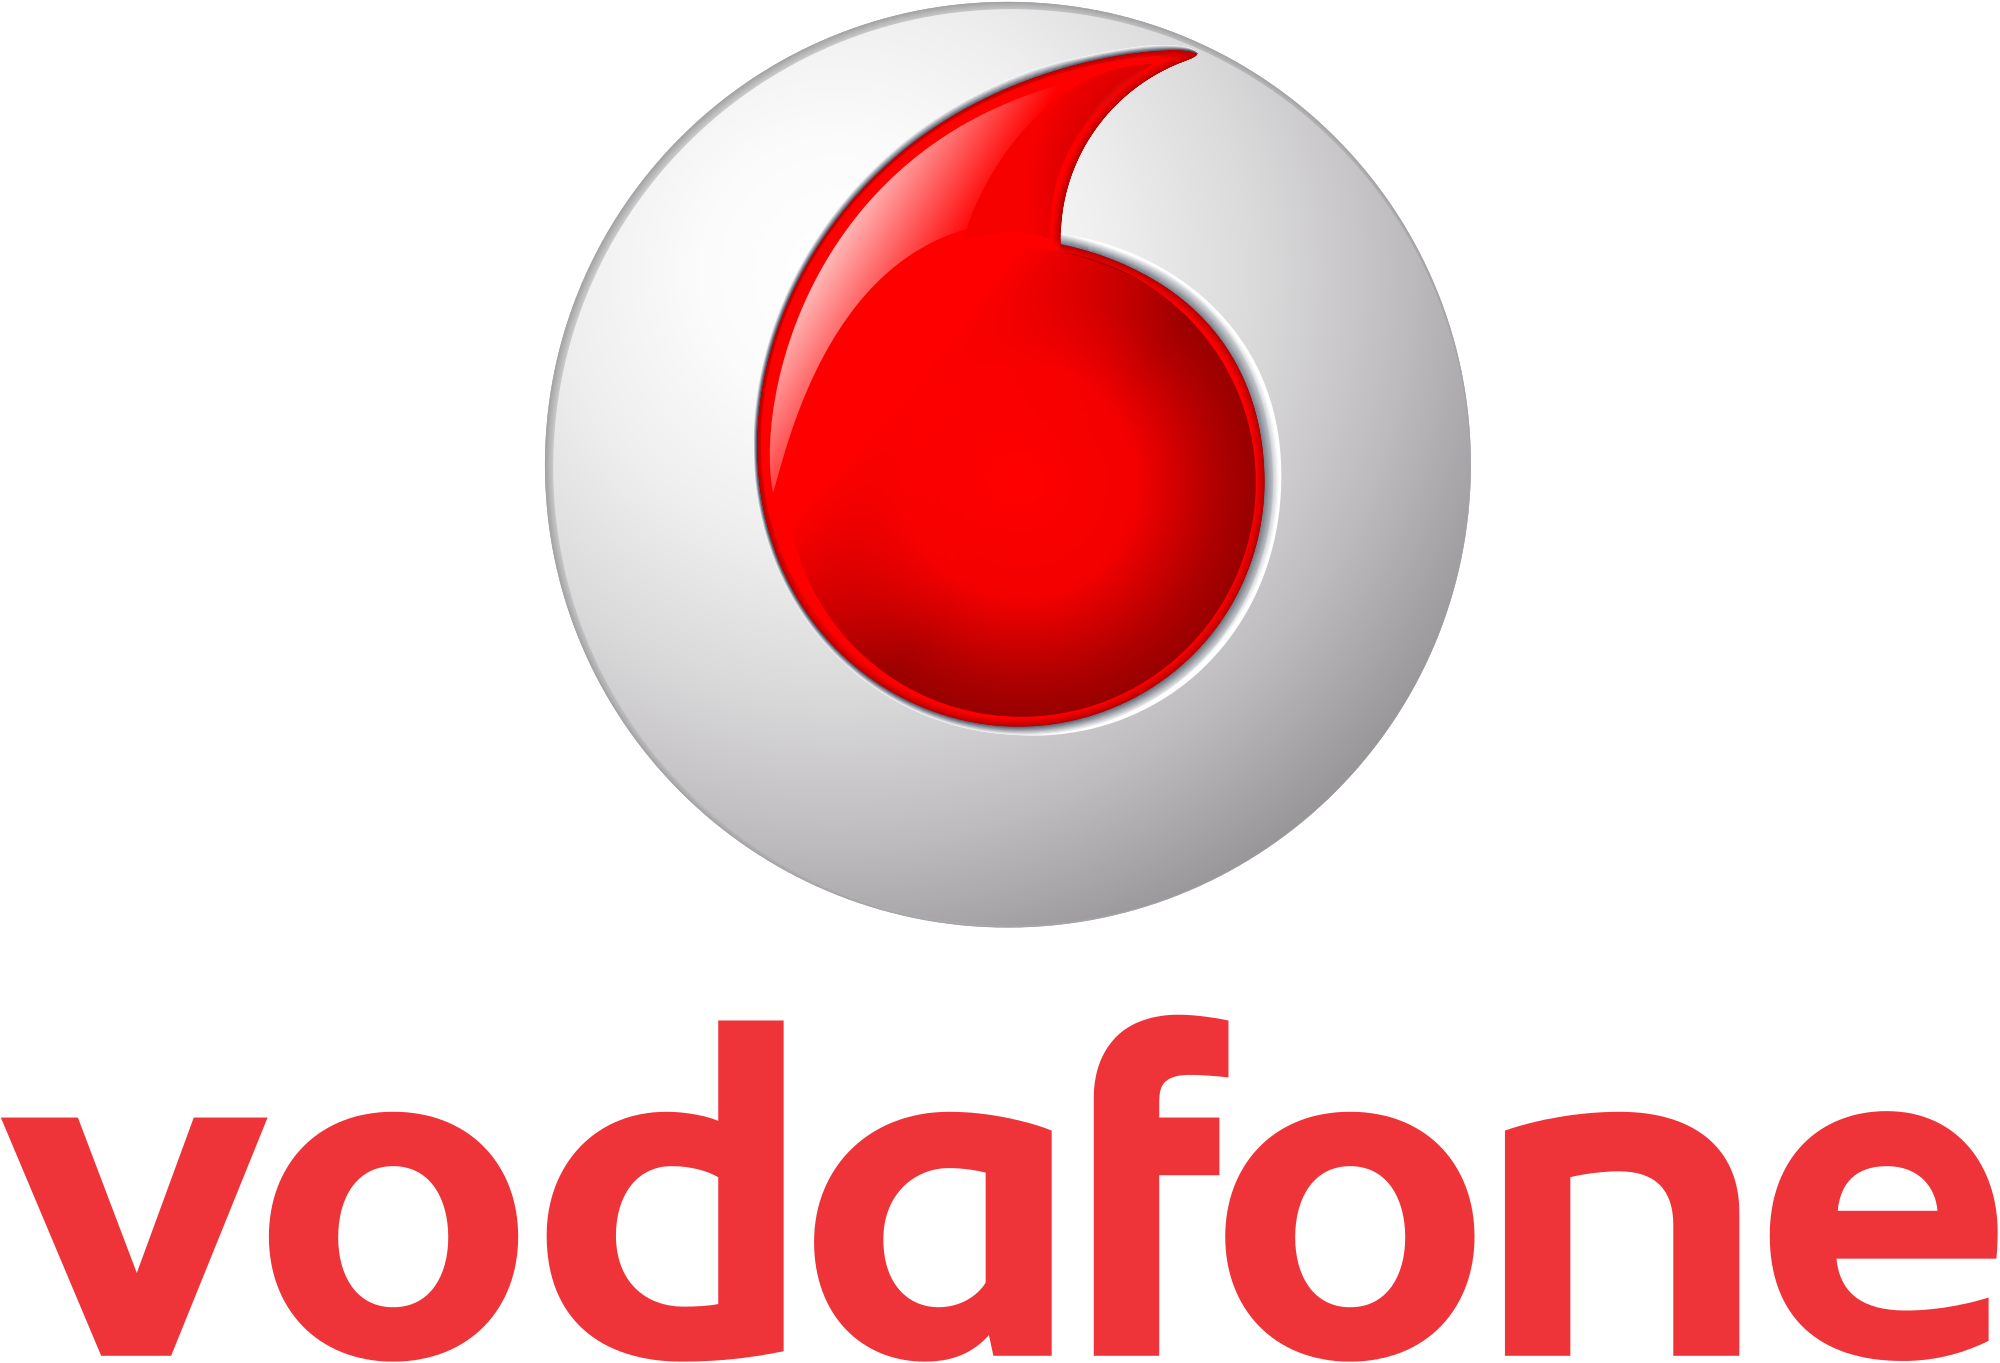 Vodafone.svg